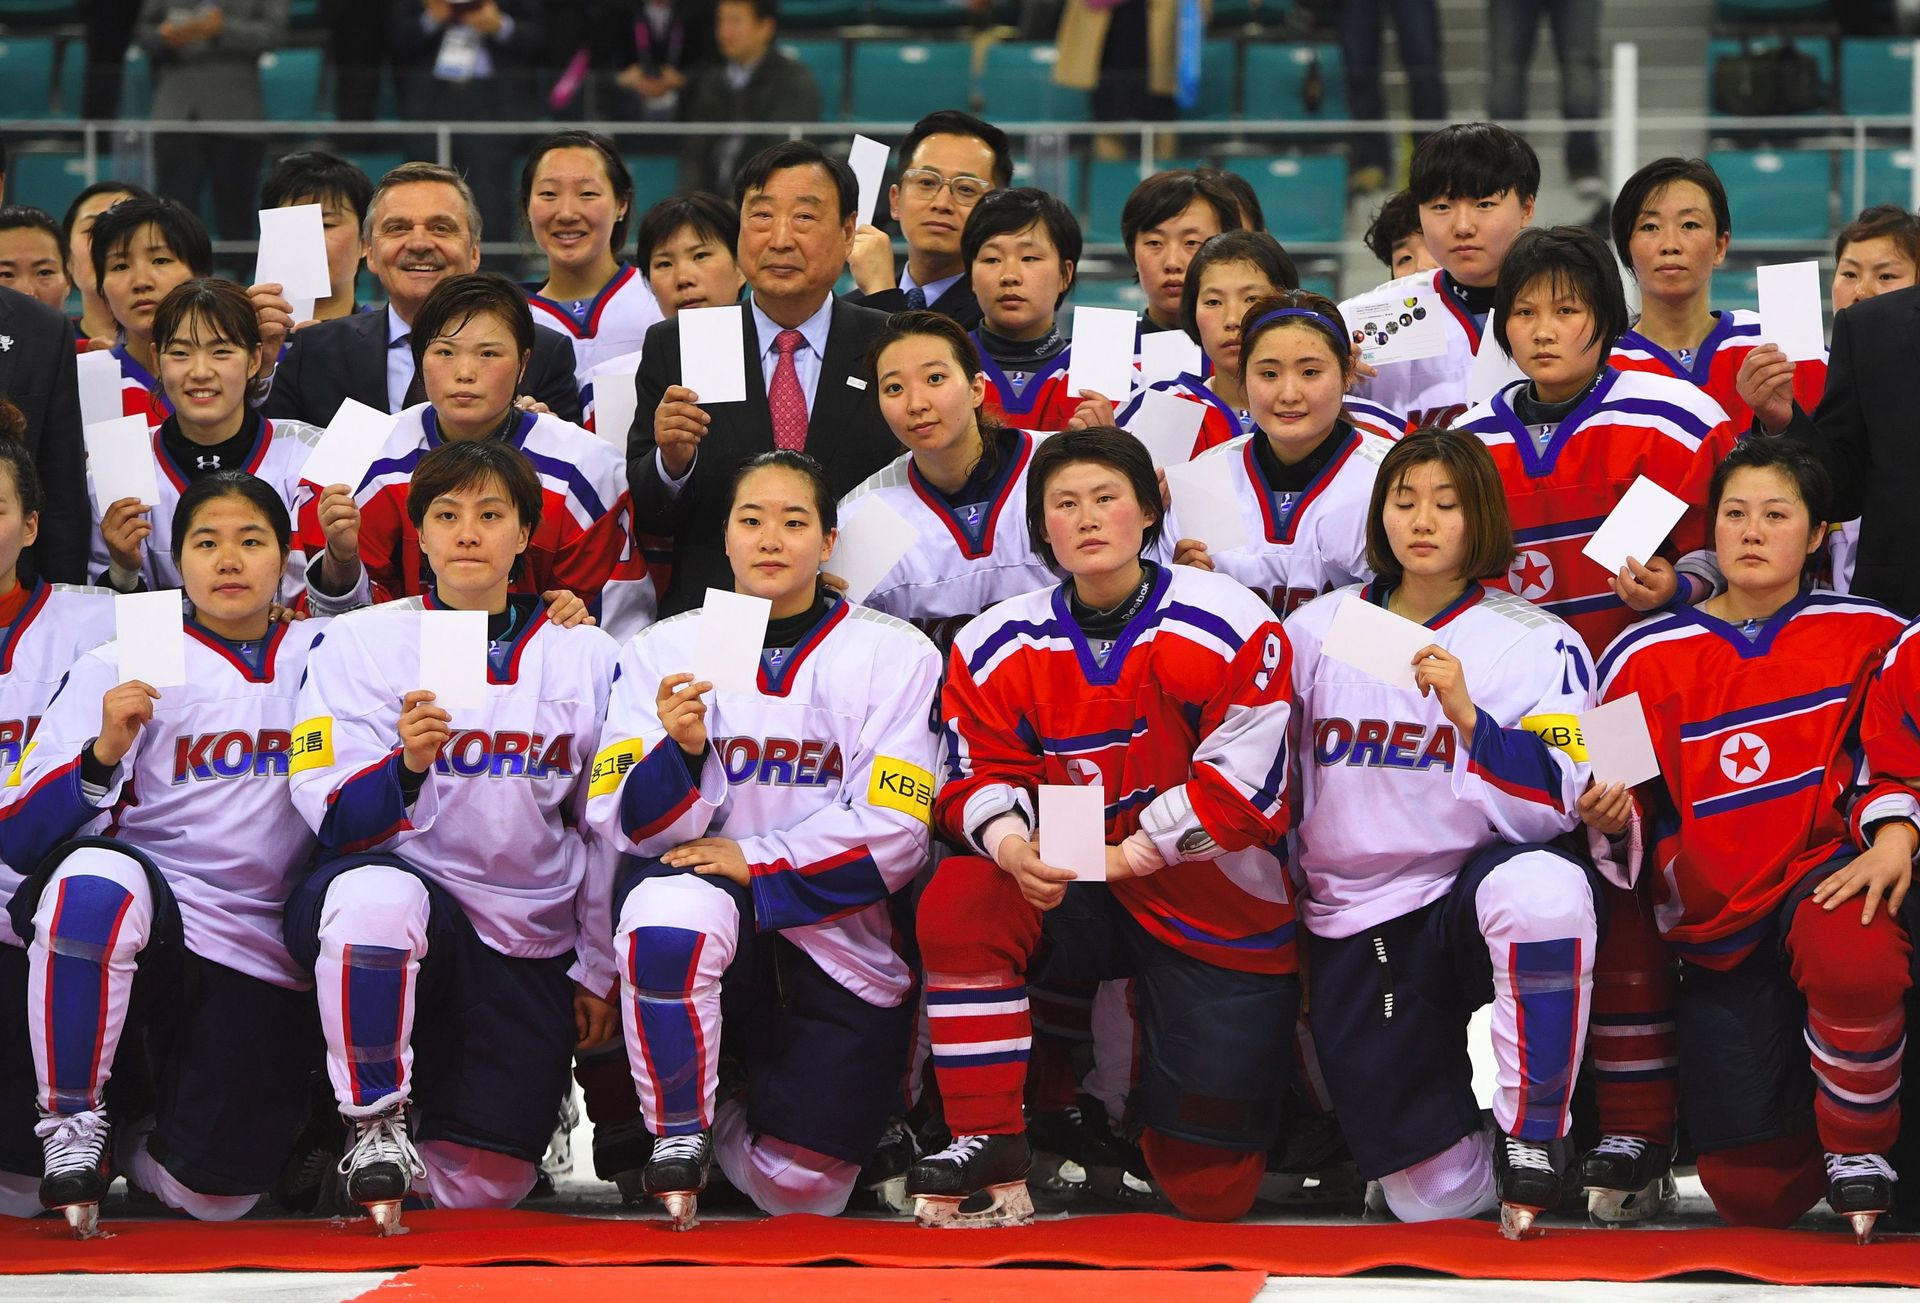 JO 2018 : La Corée du Sud propose un défilé et une équipe de hockey